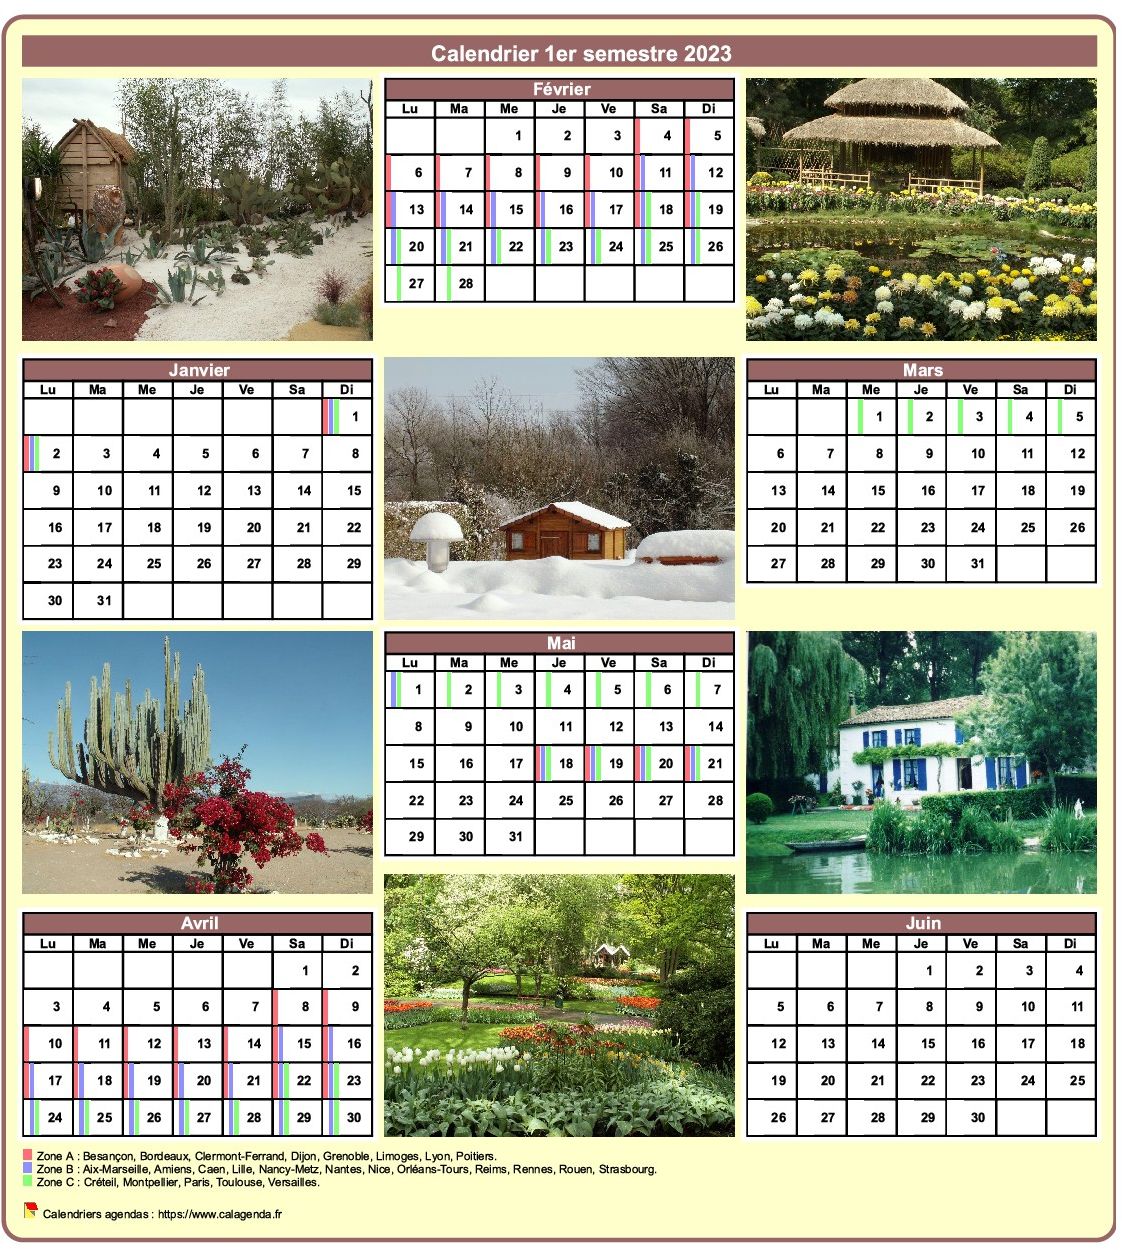 Calendrier 2023 semestriel avec une photo différente chaque mois